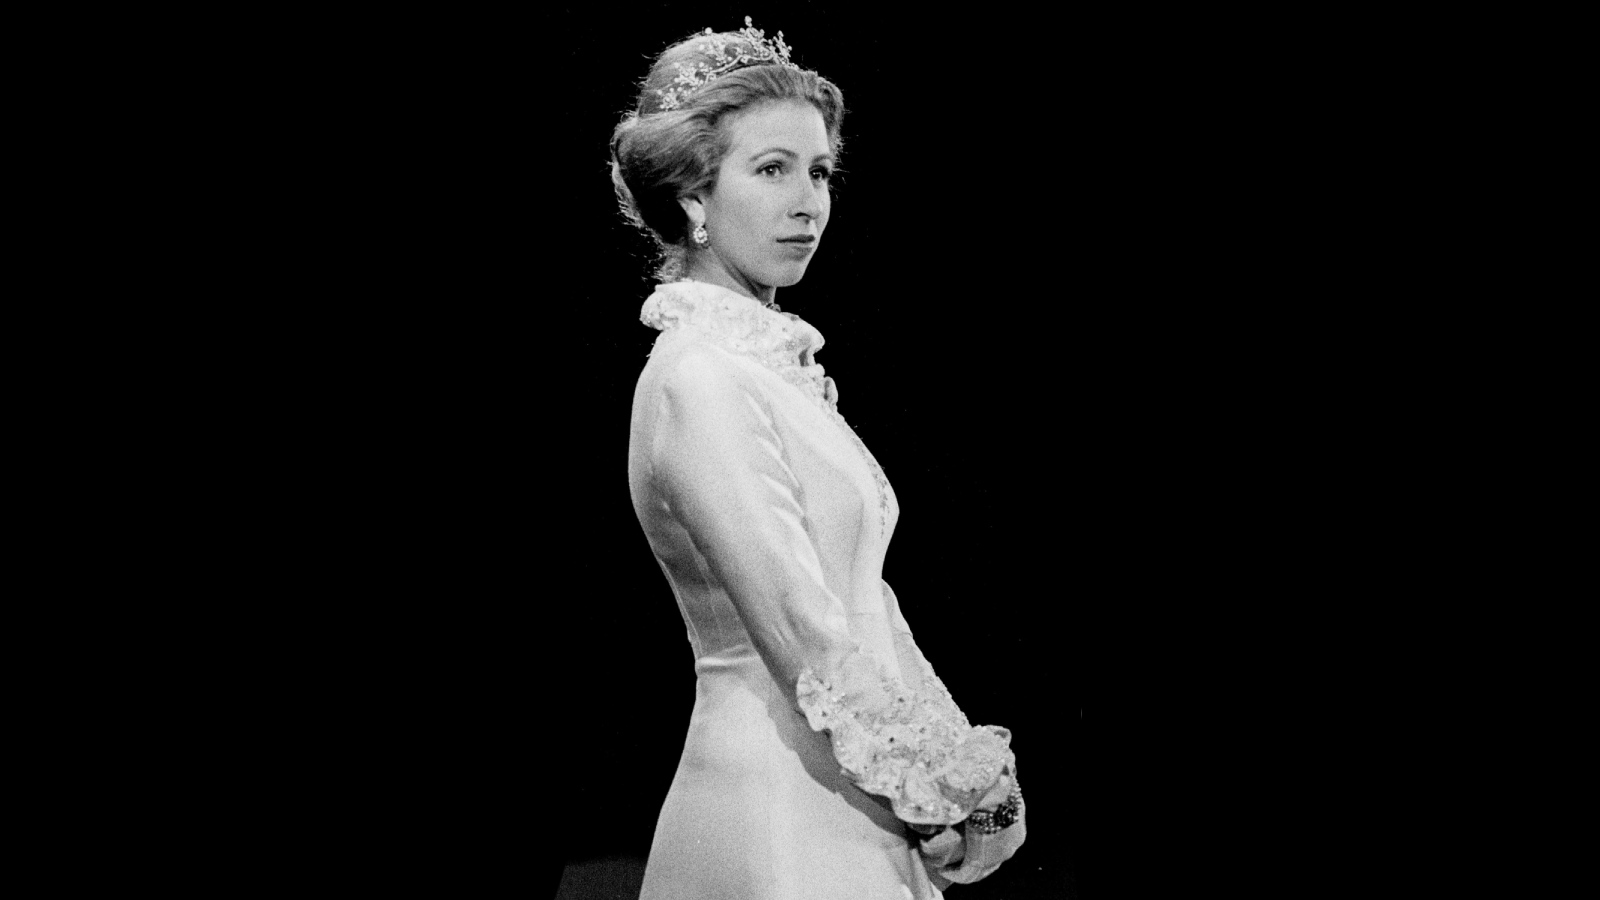 Royal news: 15 августа 2022 дочери королевы Елизаветы II принцессе Анне исполняется 72 года